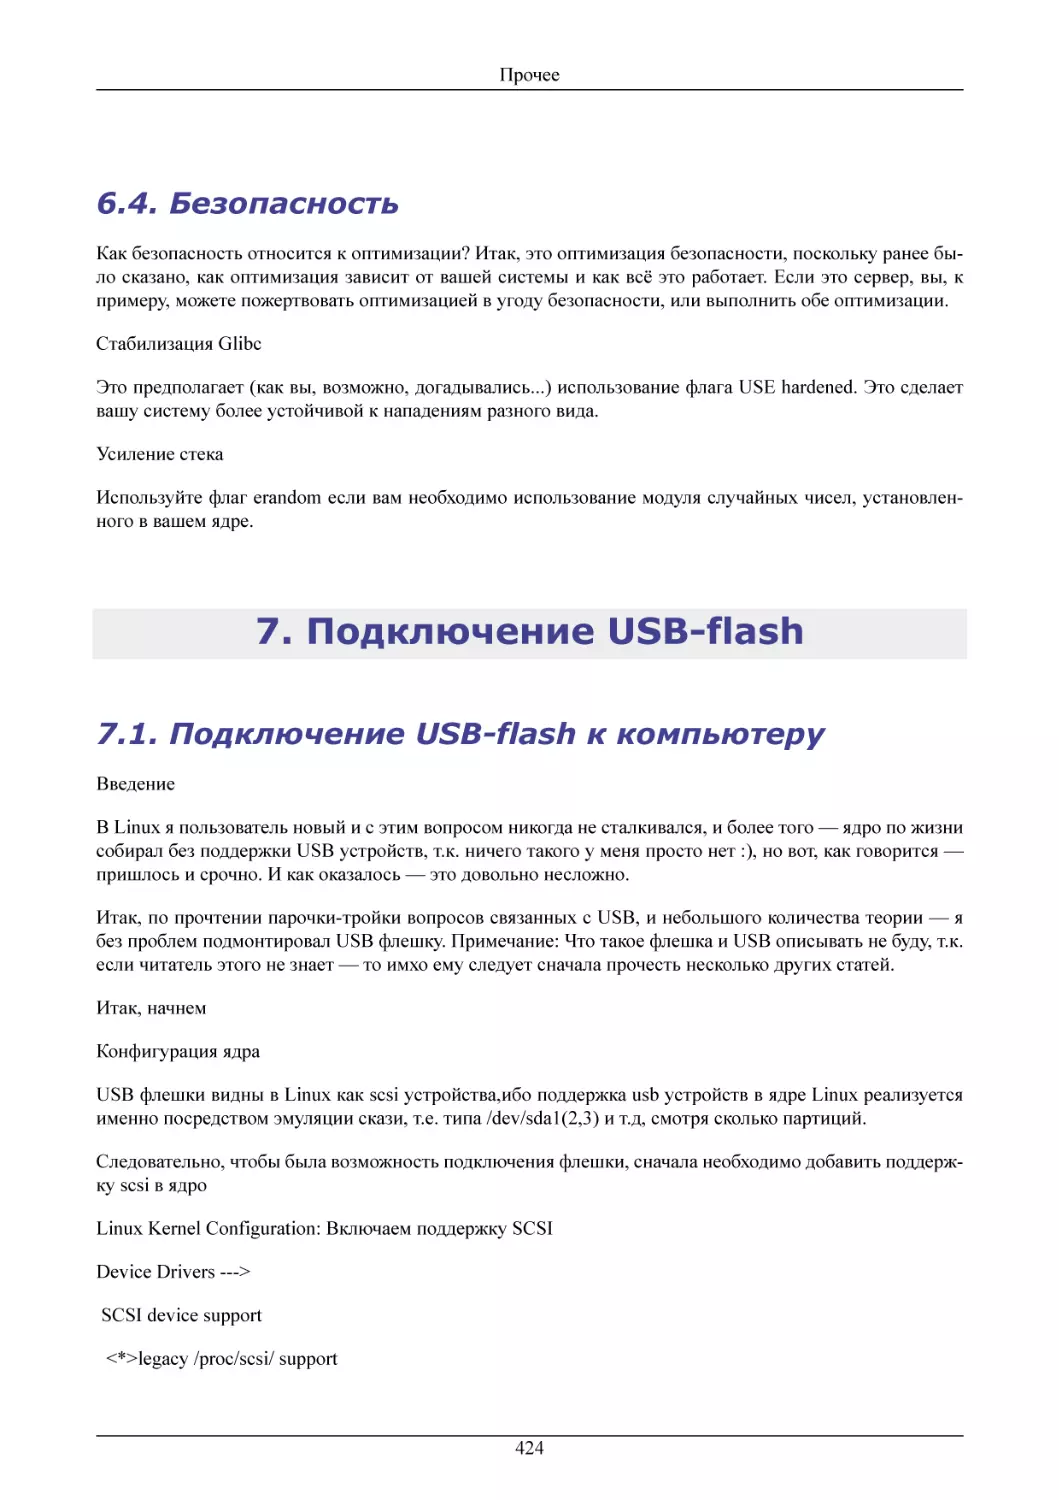 Безопасность
Подключение USB-flash
Подключение USB-flash к компьютеру